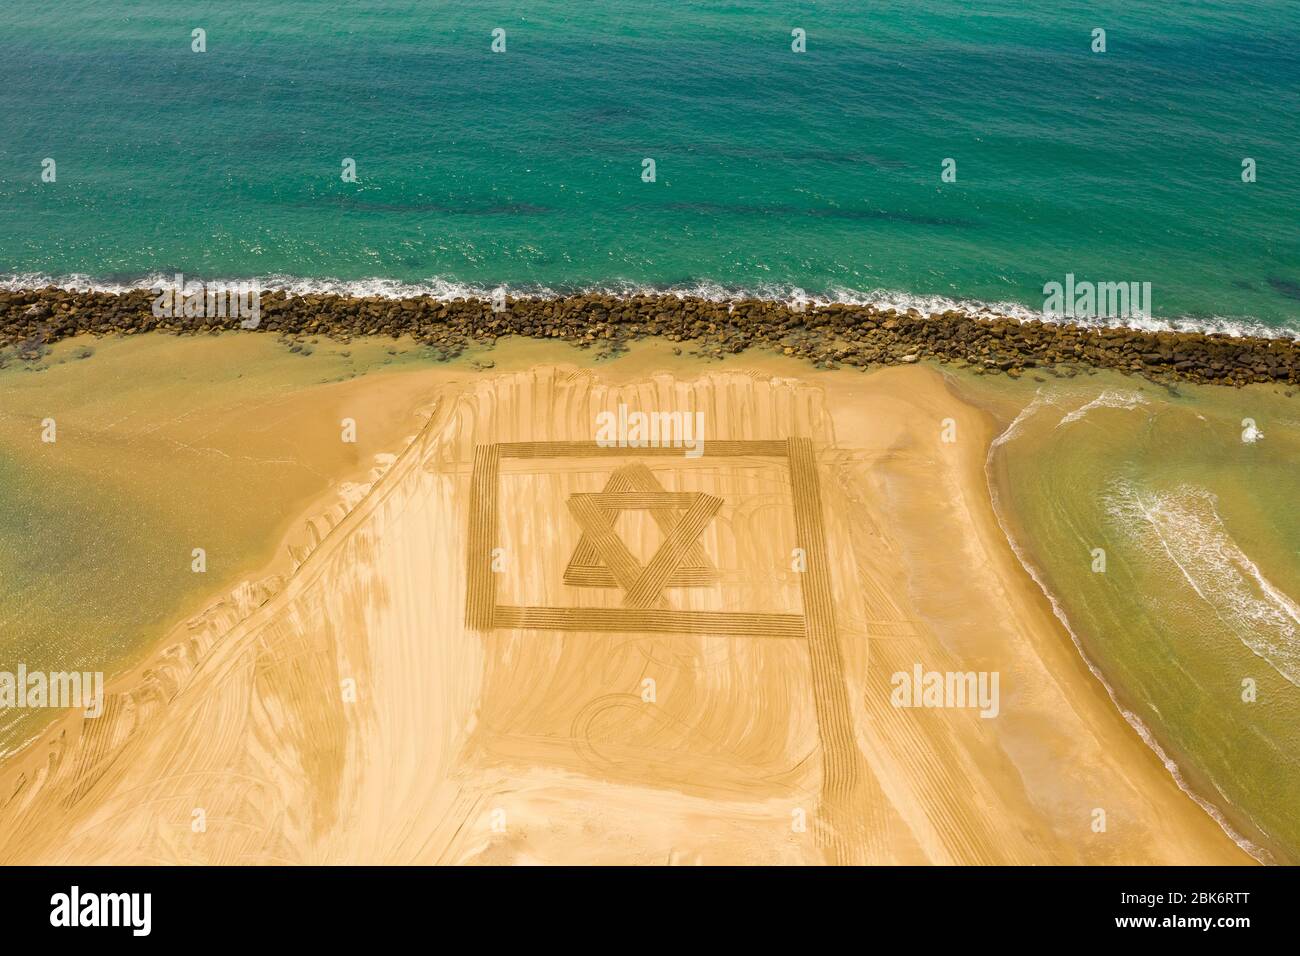 Bandera de Israel diseñado en arena de playa para el día de independencia durante el bloqueo del virus de la corona, vista aérea. Foto de stock